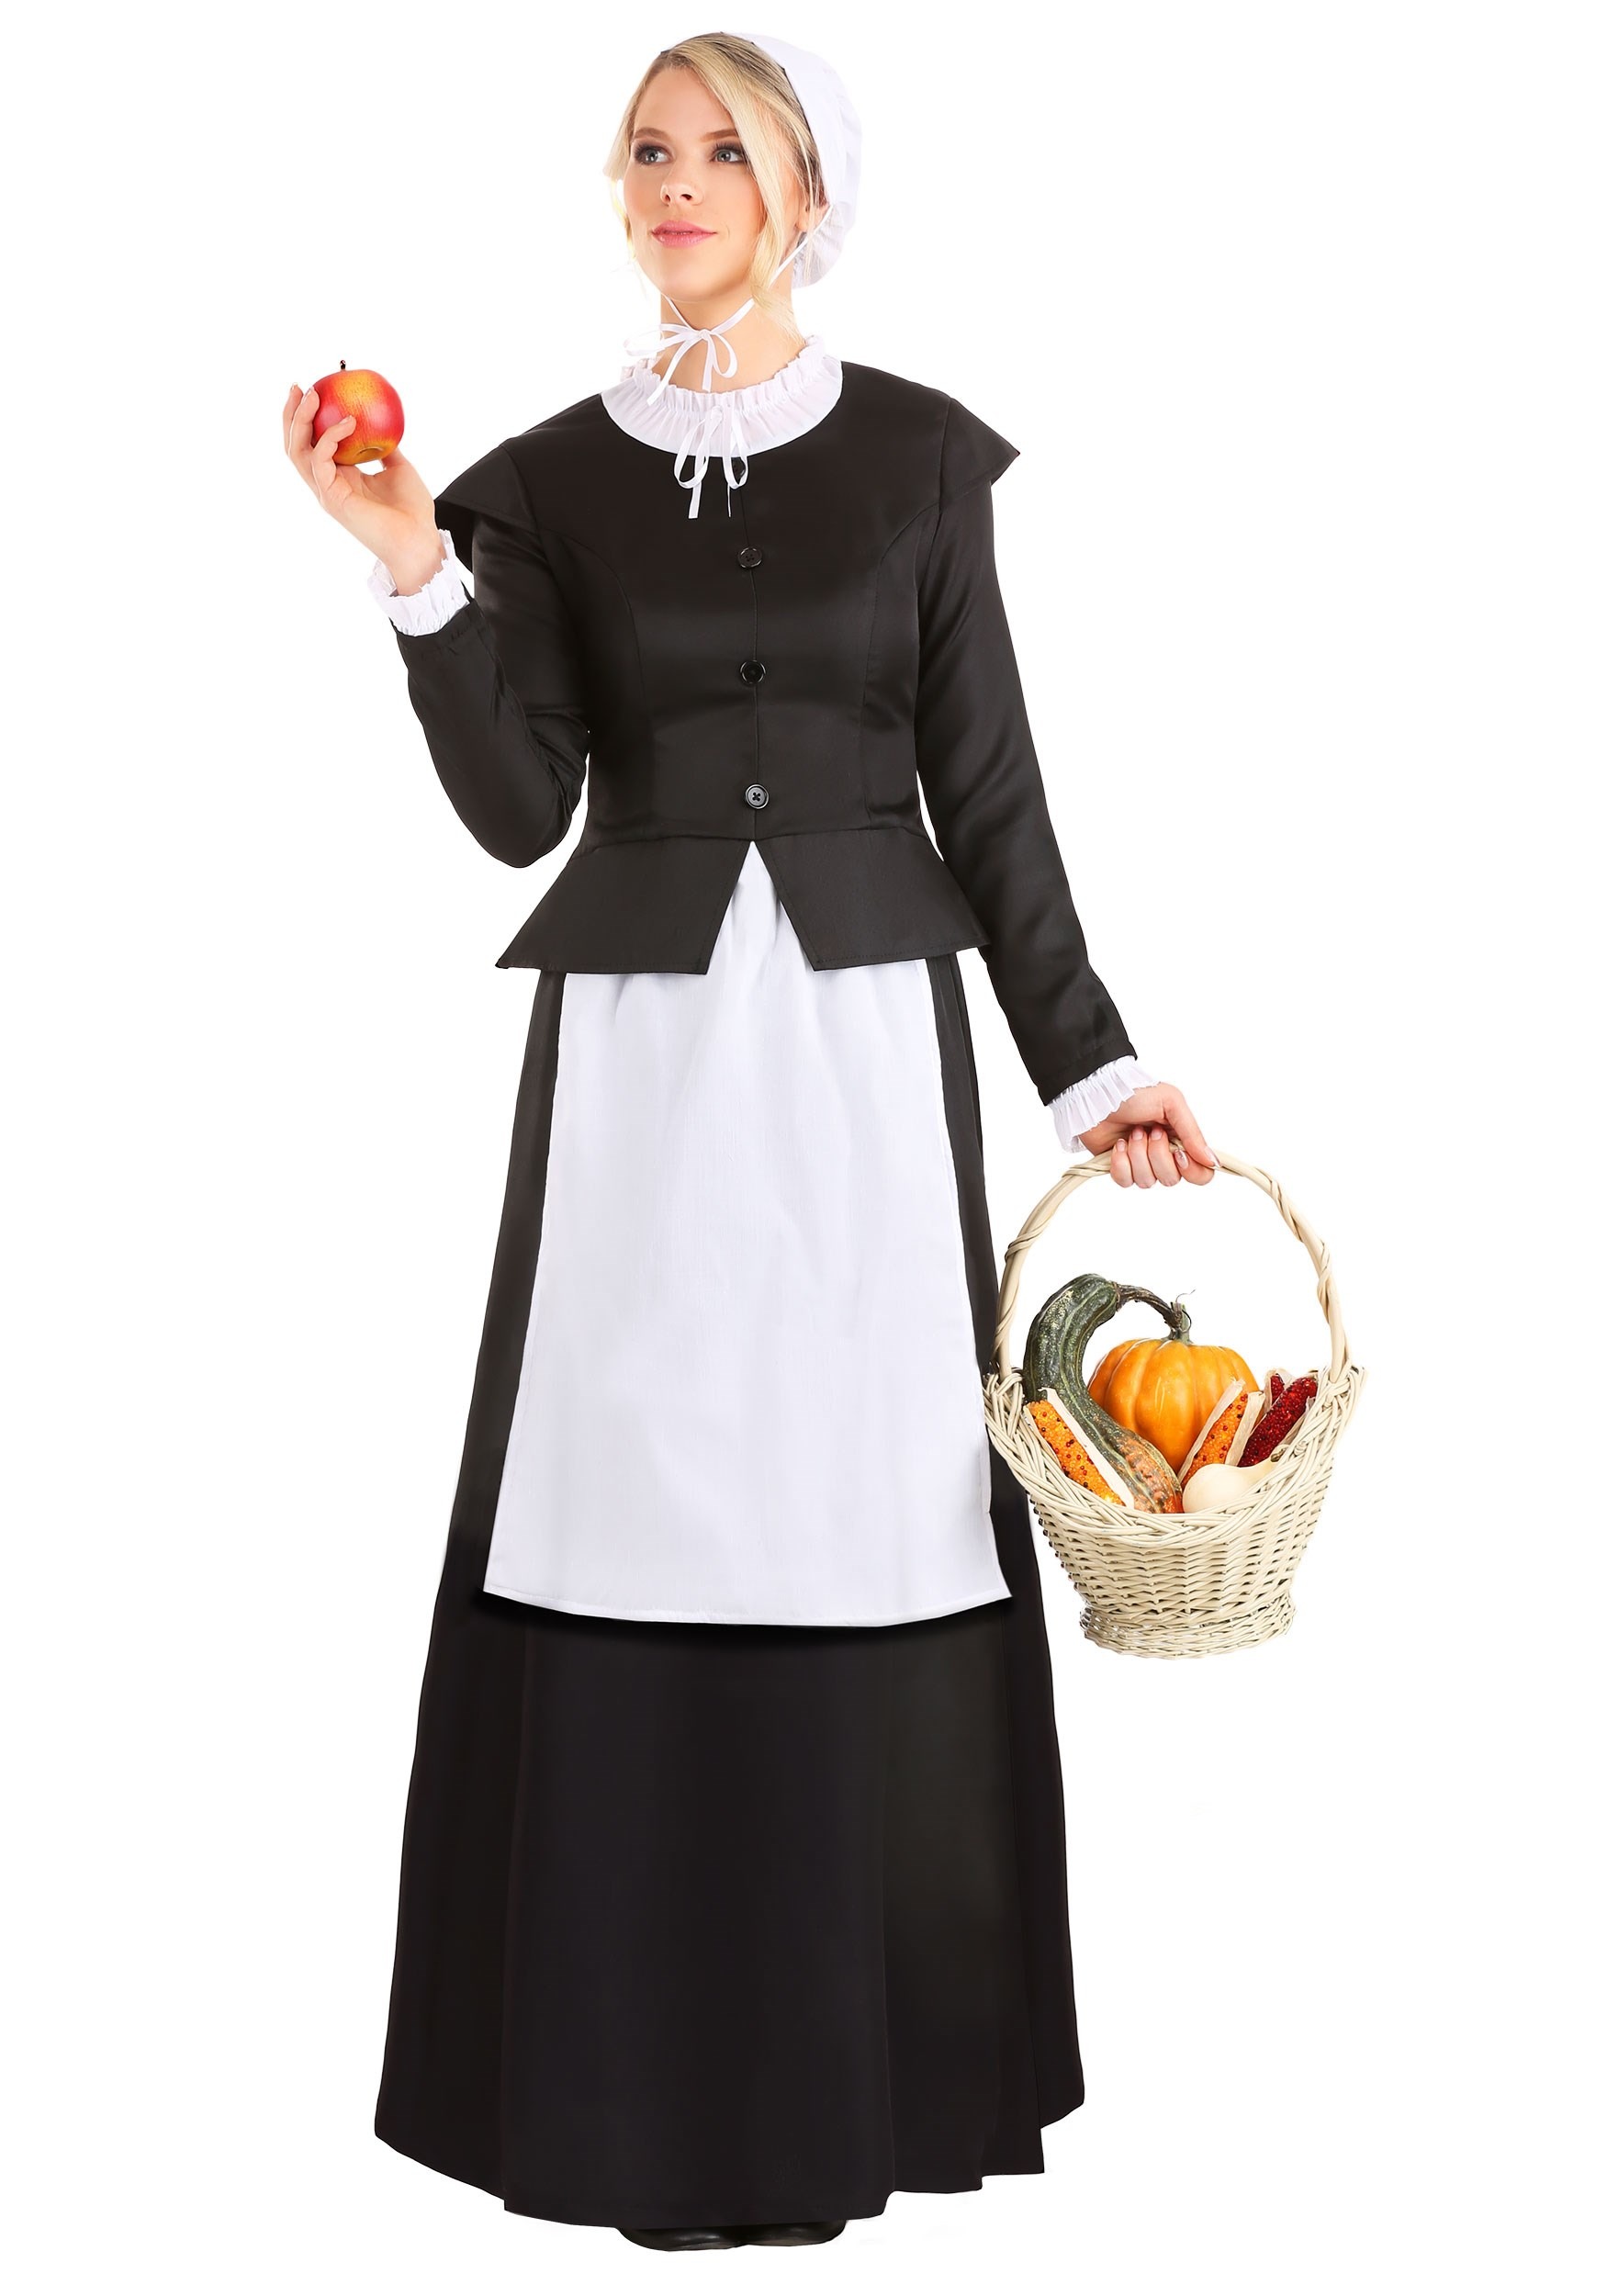 Women’s Thankful Pilgrim Costume